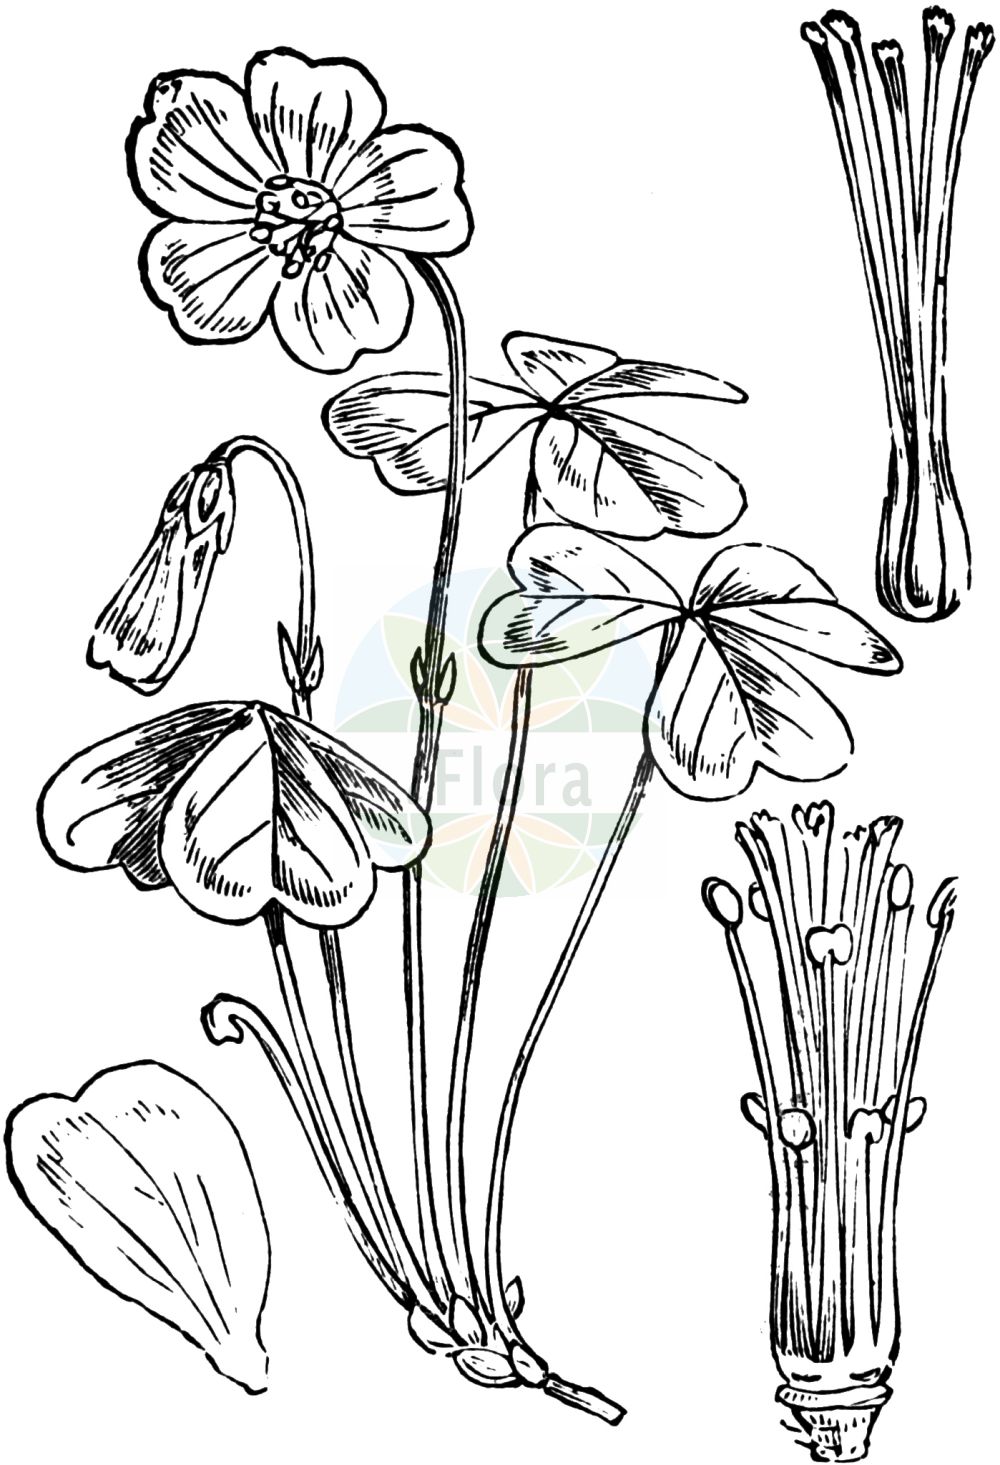 Historische Abbildung von Oxalis acetosella (Wald-Sauerklee - Wood-sorrel). Das Bild zeigt Blatt, Bluete, Frucht und Same. ---- Historical Drawing of Oxalis acetosella (Wald-Sauerklee - Wood-sorrel). The image is showing leaf, flower, fruit and seed.(Oxalis acetosella,Wald-Sauerklee,Wood-sorrel,Oxalis acetosella,Oxalis longiflora,Oxalis nemoralis,Oxalis parviflora,Oxalis vulgaris,Oxys acetosella,Wald-Sauerklee,Wood-sorrel,White Wood Sorrel,Mountain Woodsorrel,Common Wood Sorrel,Oxalis,Sauerklee,Sorrel,Oxalidaceae,Sauerkleegewächse,Wood Sorrel family,Blatt,Bluete,Frucht,Same,leaf,flower,fruit,seed,Fitch et al. (1880))